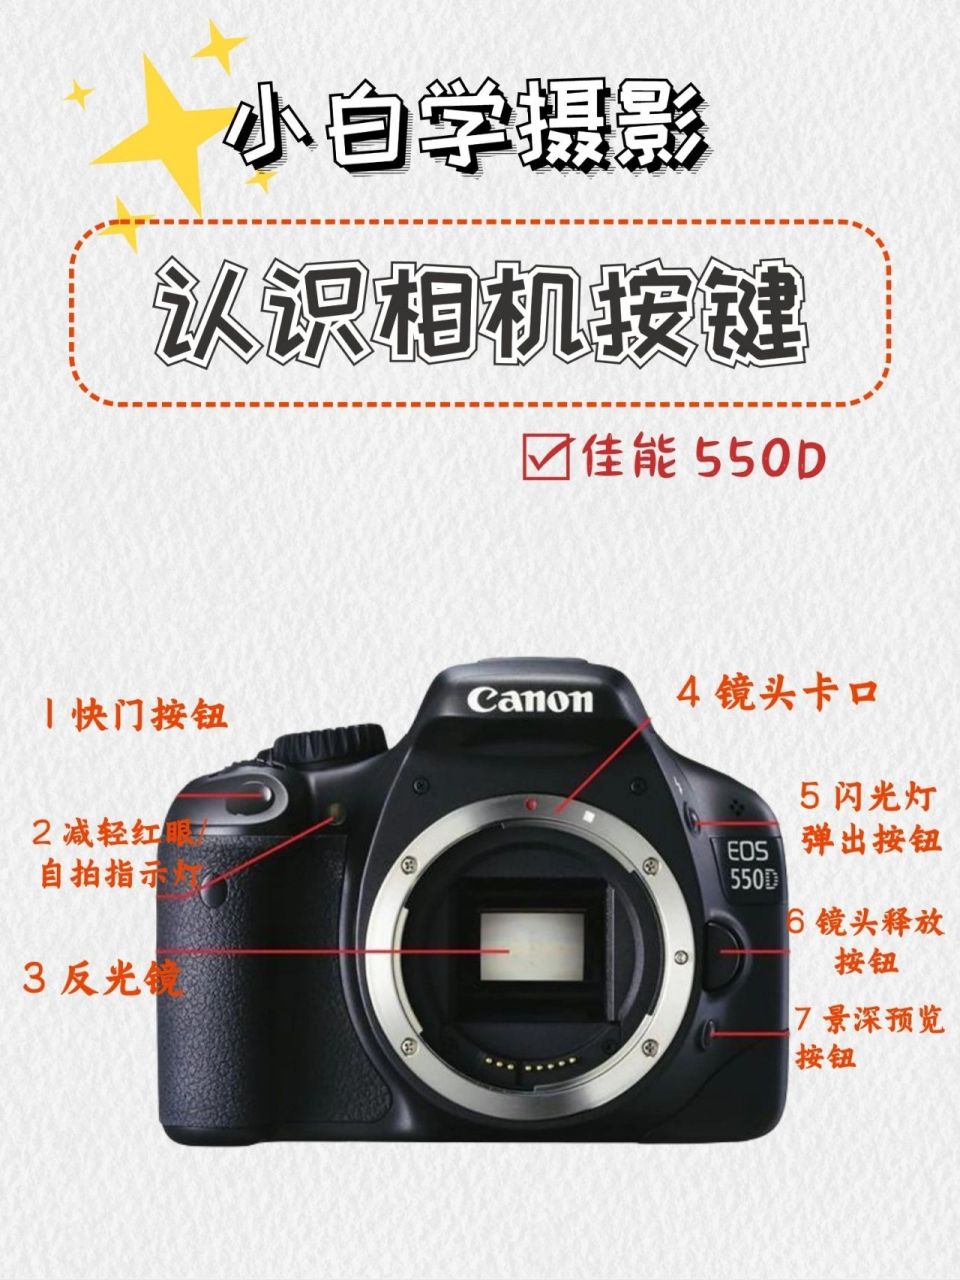 92佳能550d97相机按键功能于介绍 92佳能550d 相机机身部件及